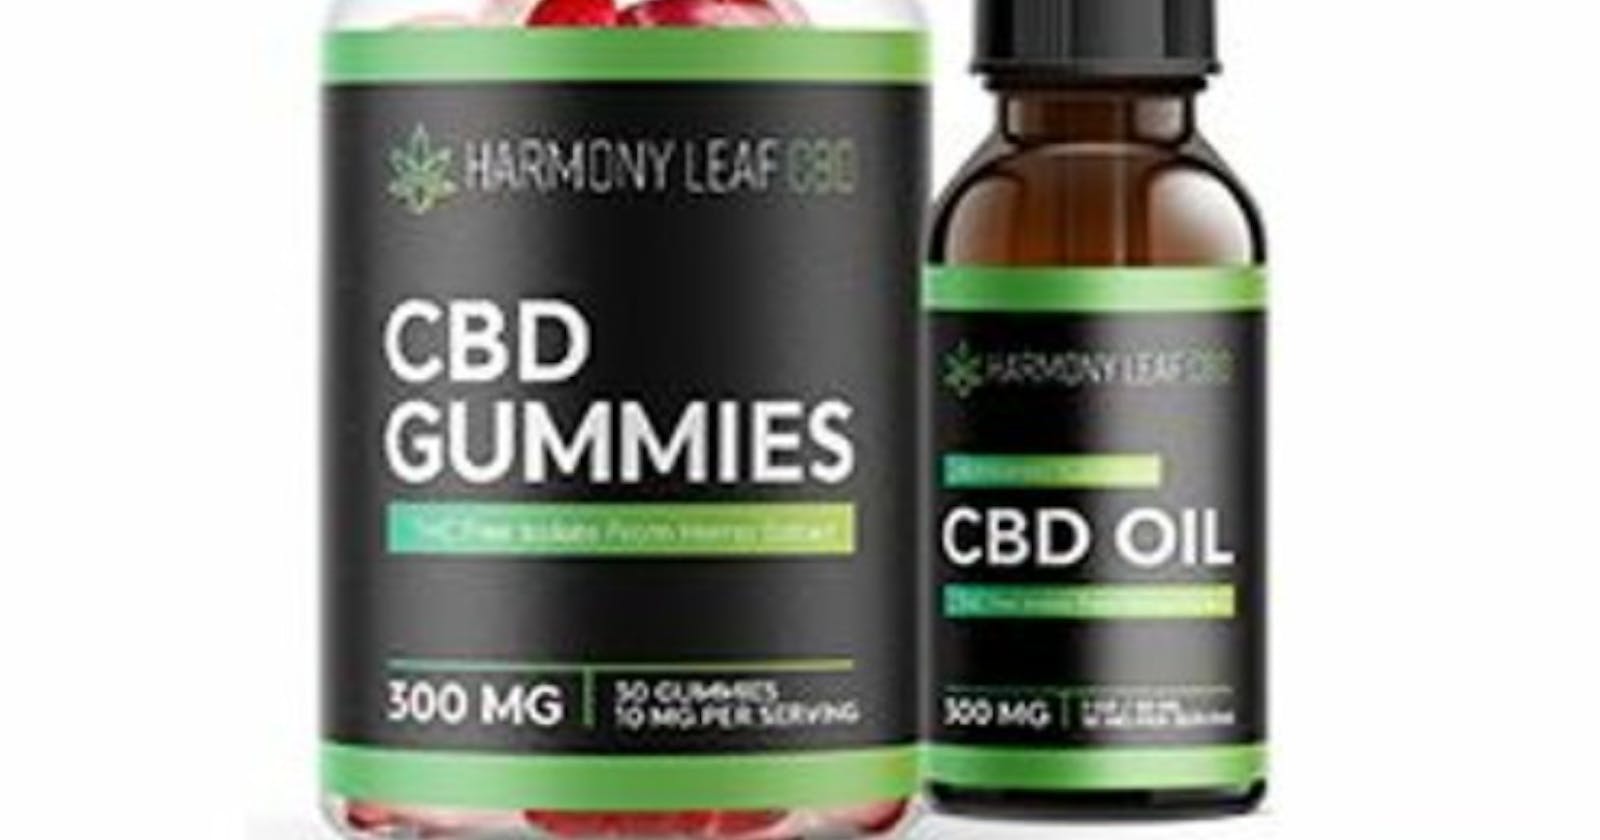 Harmony Leaf CBD Gummies Reviews Is It A Scam Or Legit?